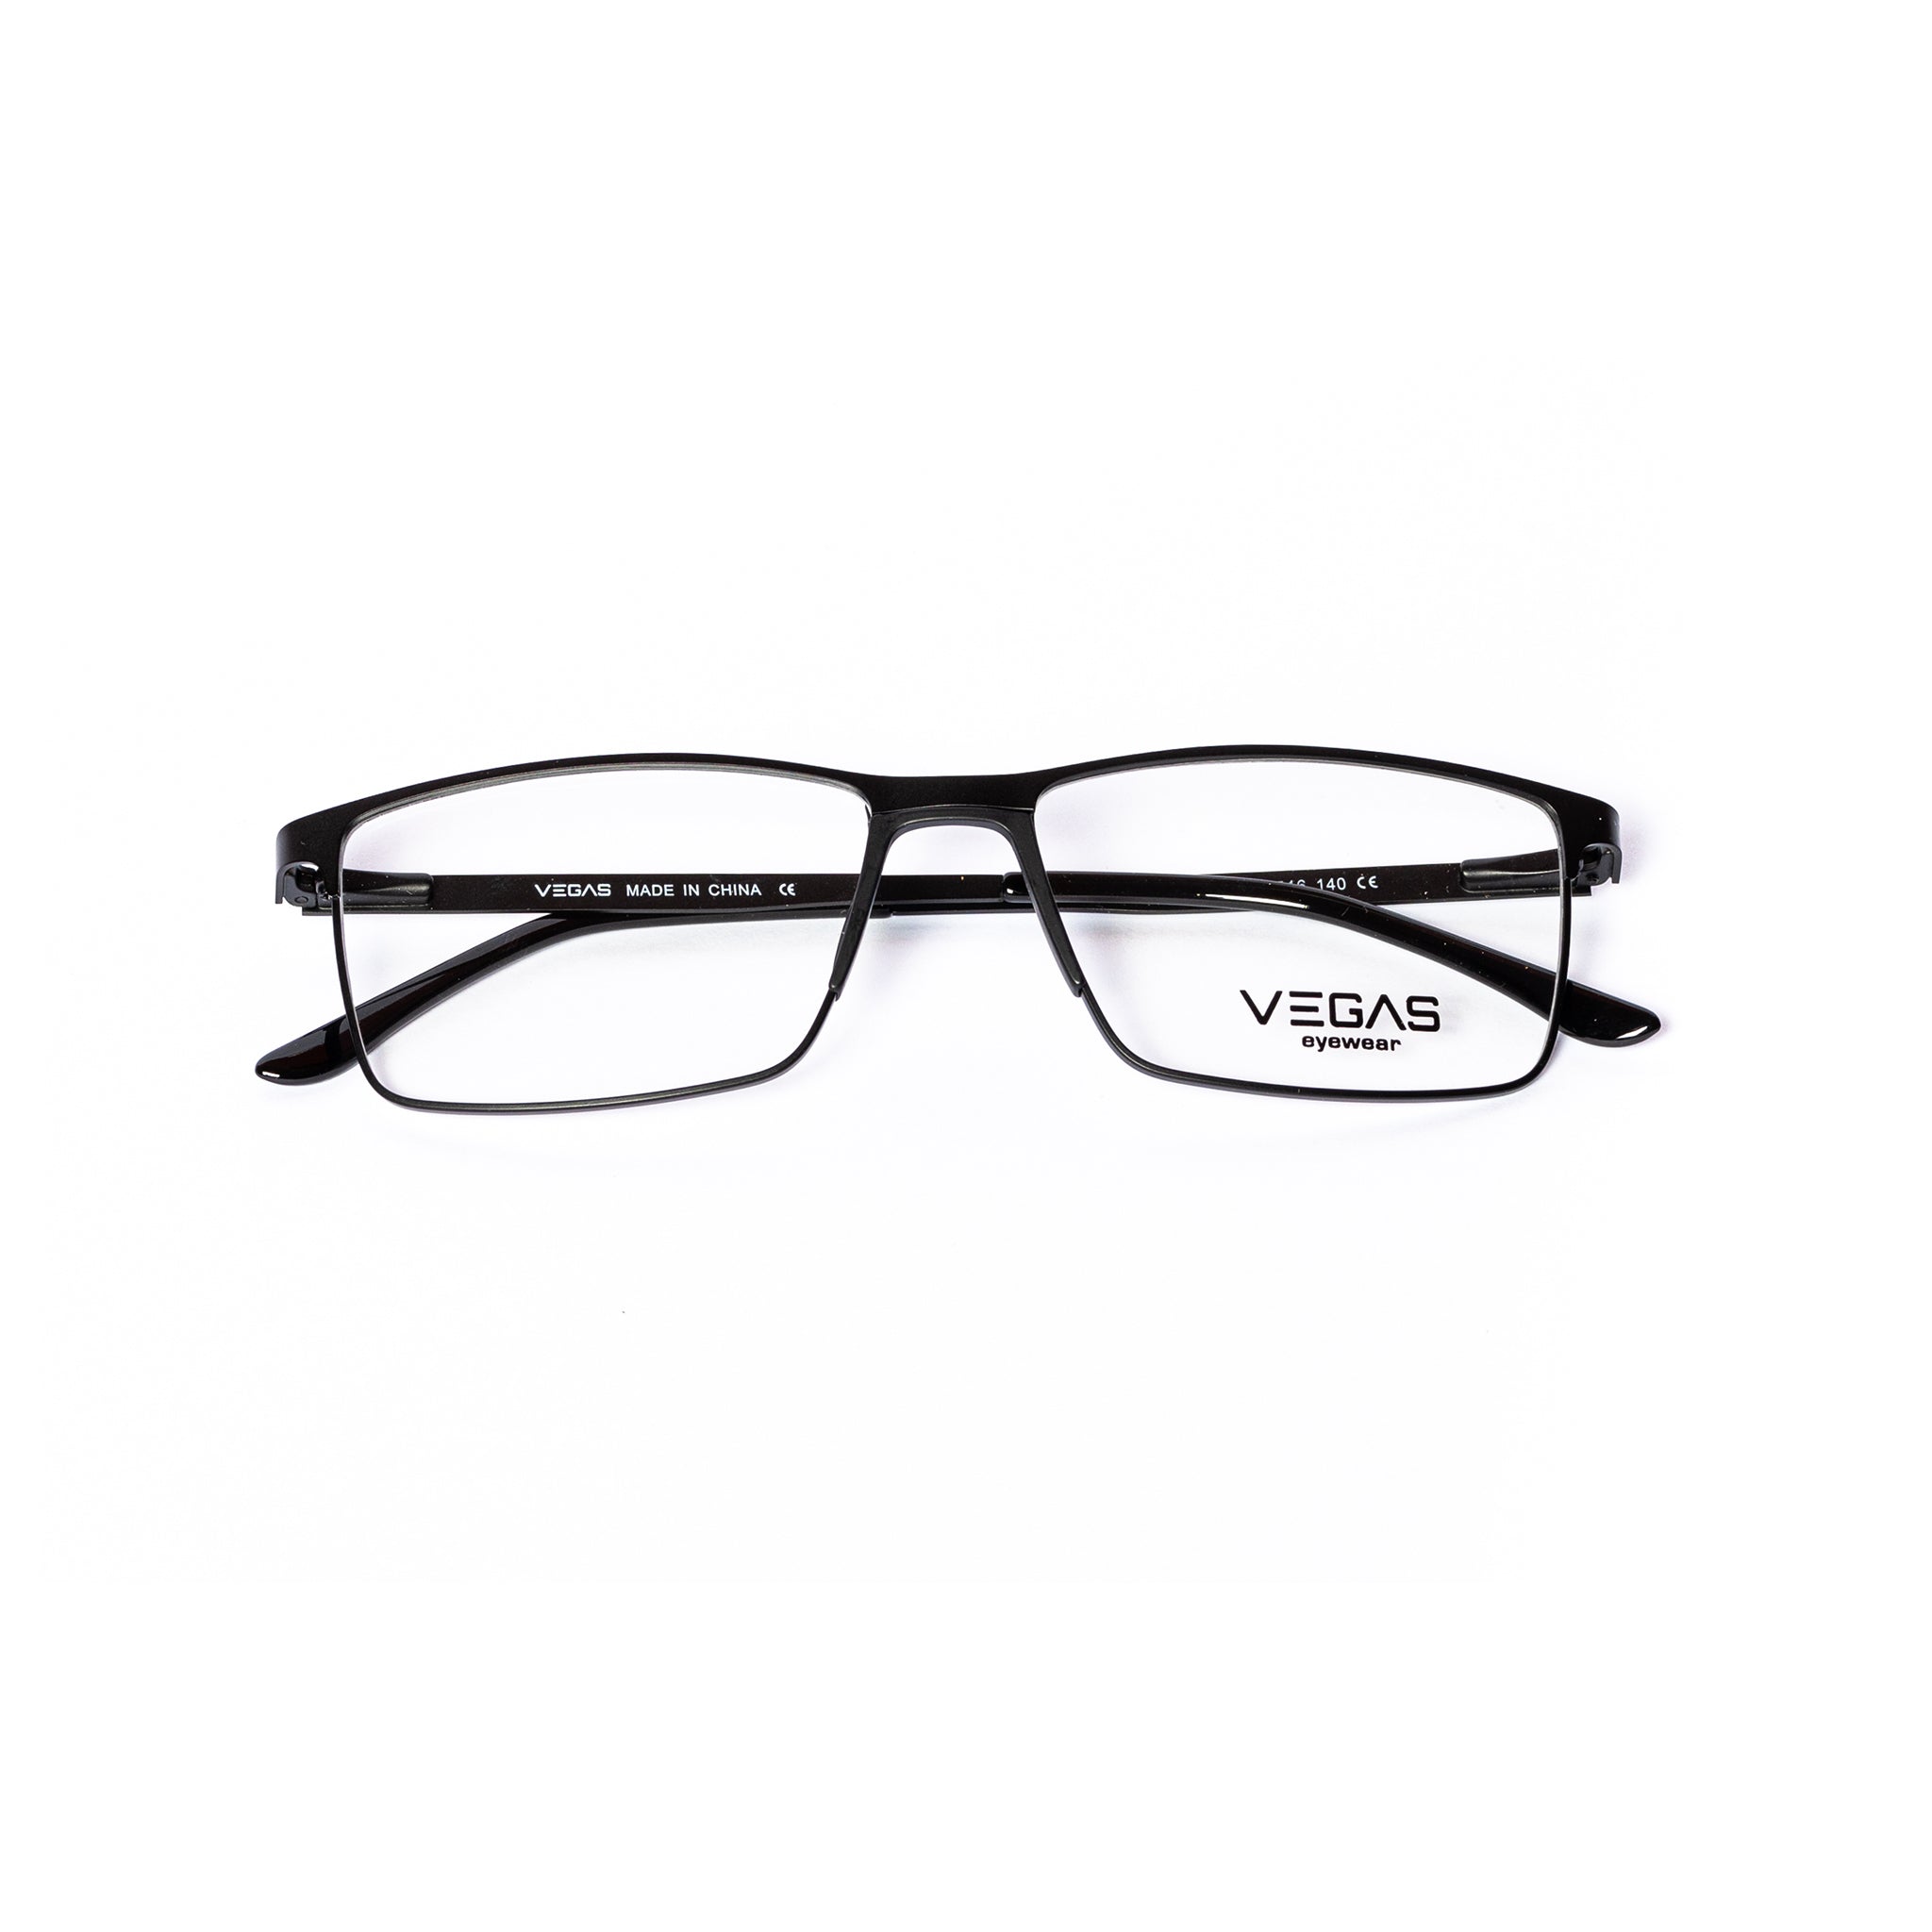 VEGAS P8291 - COC Eyewear